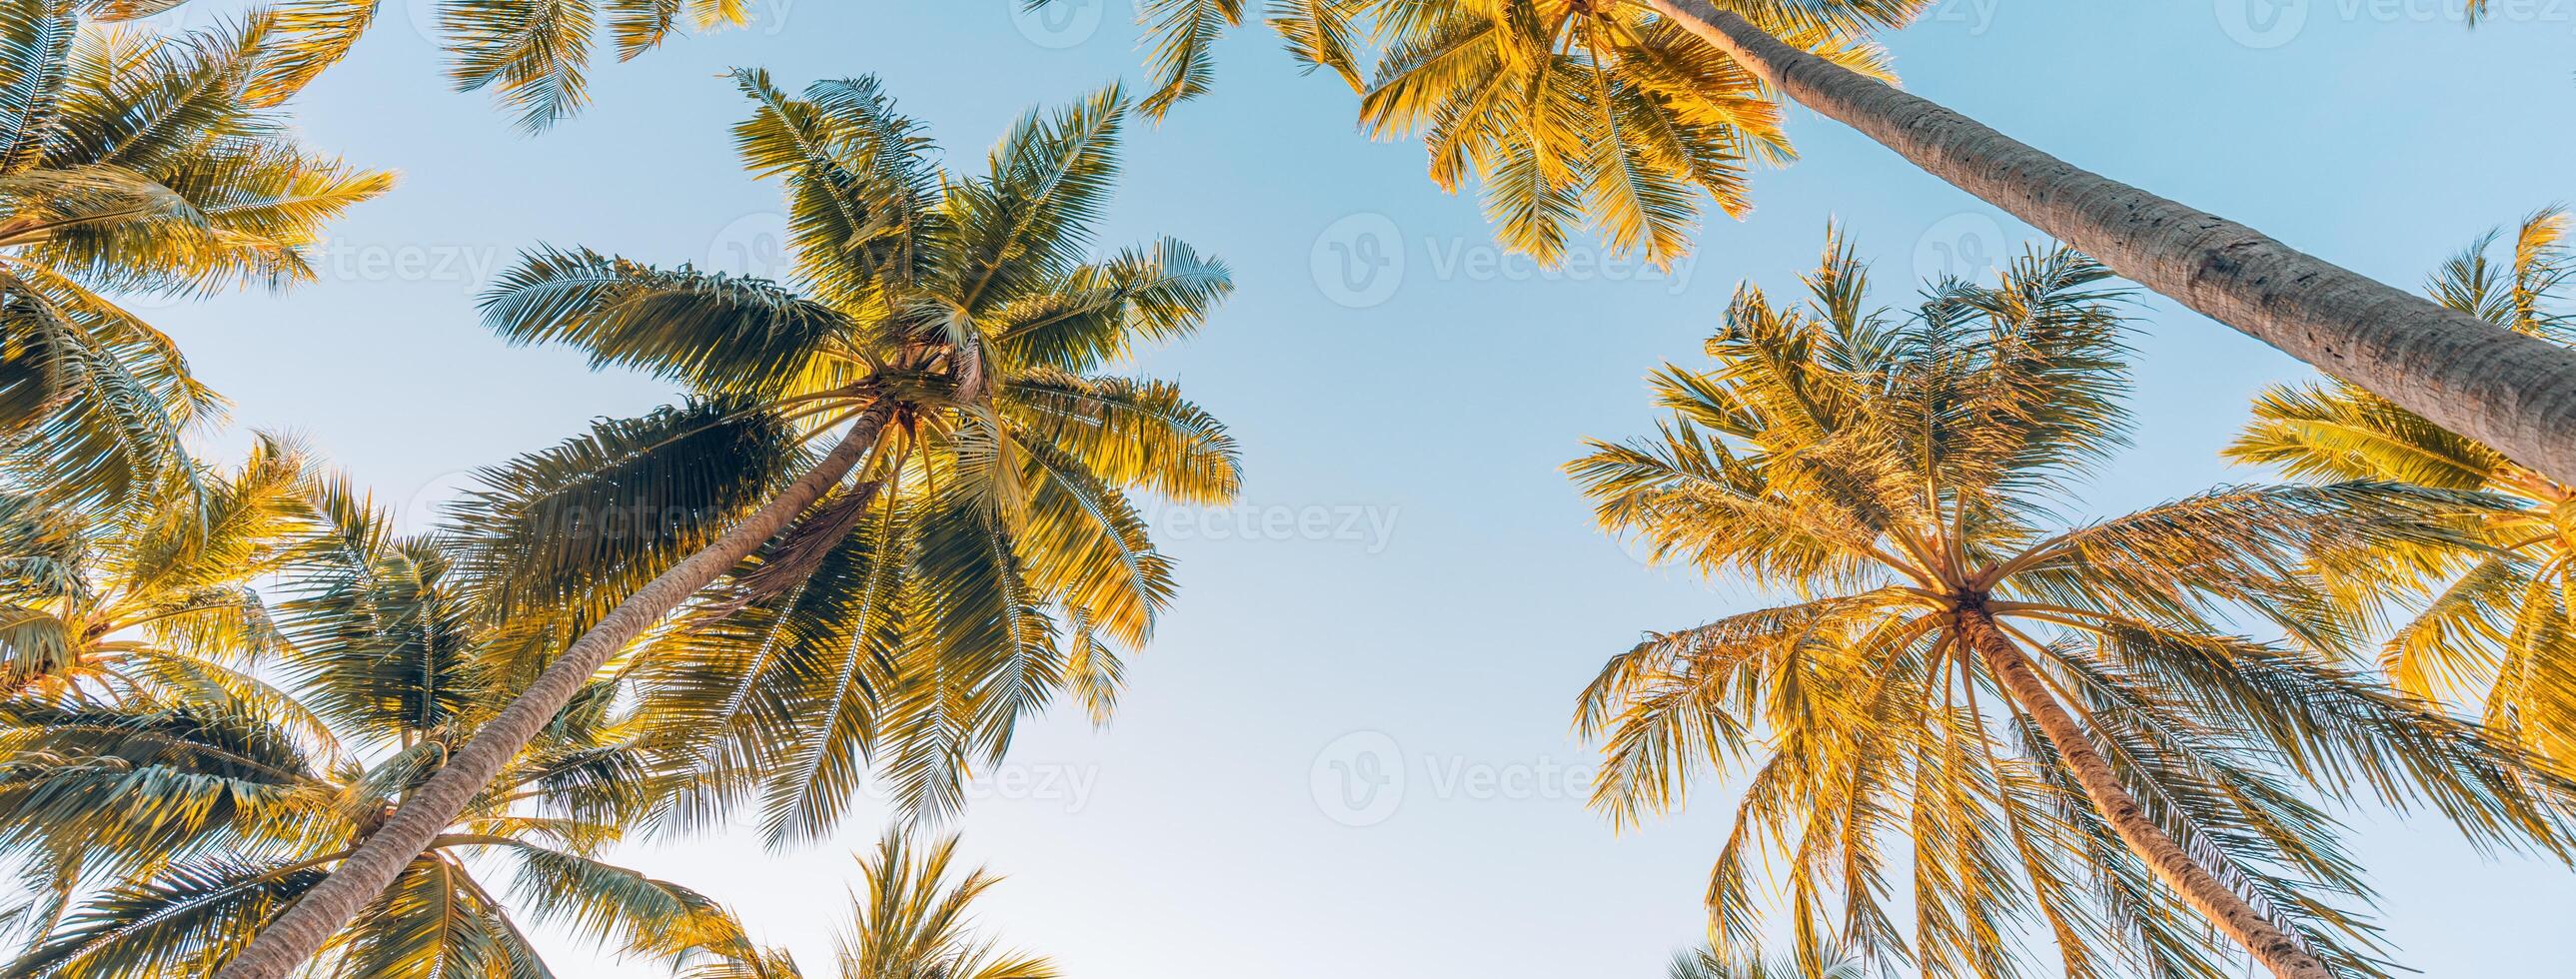 estate vacanza striscione. romantico vibrazioni di tropicale palma albero luce del sole su cielo sfondo. all'aperto tramonto esotico fogliame avvicinamento natura paesaggio. Noce di cocco palma alberi splendente sole al di sopra di luminosa cielo panorama foto